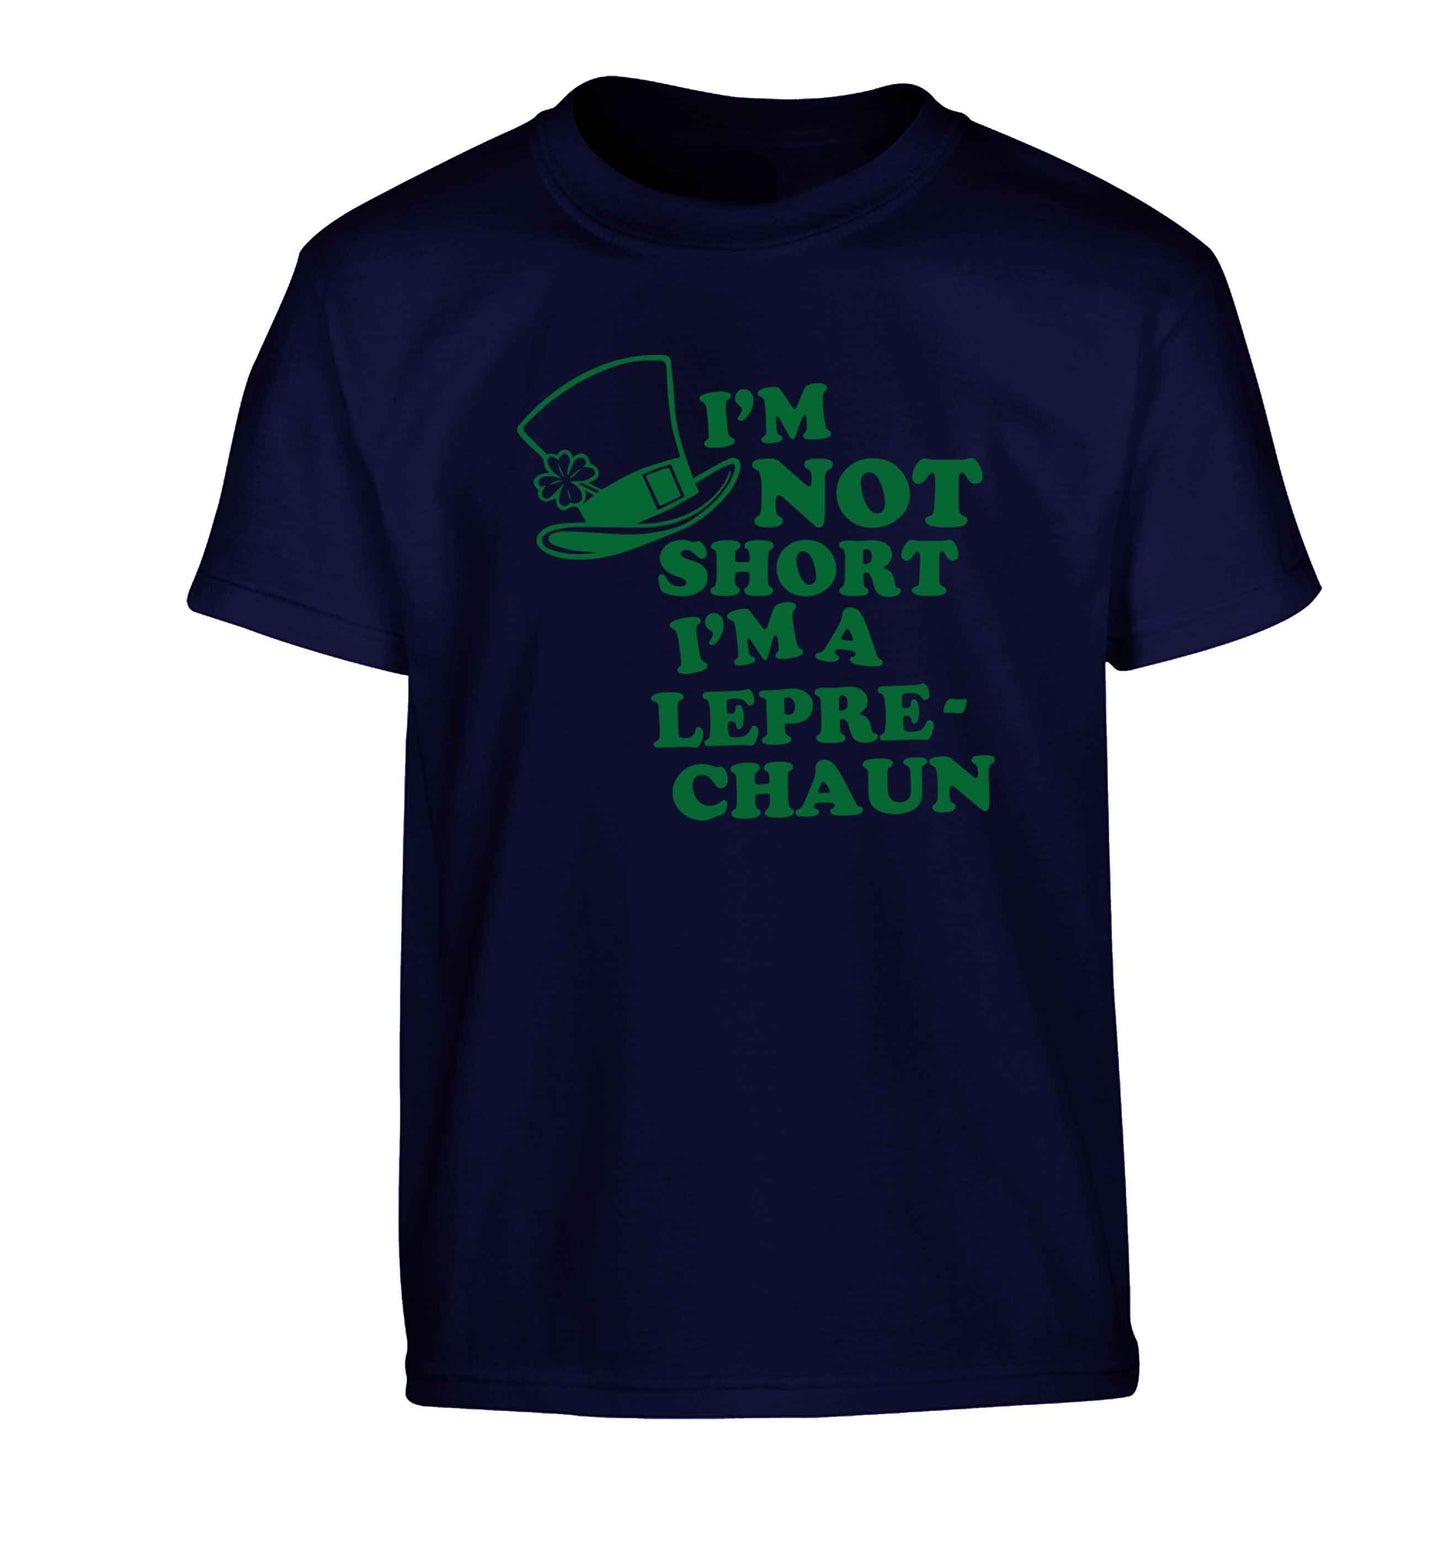 I'm not short I'm a leprechaun Children's navy Tshirt 12-13 Years